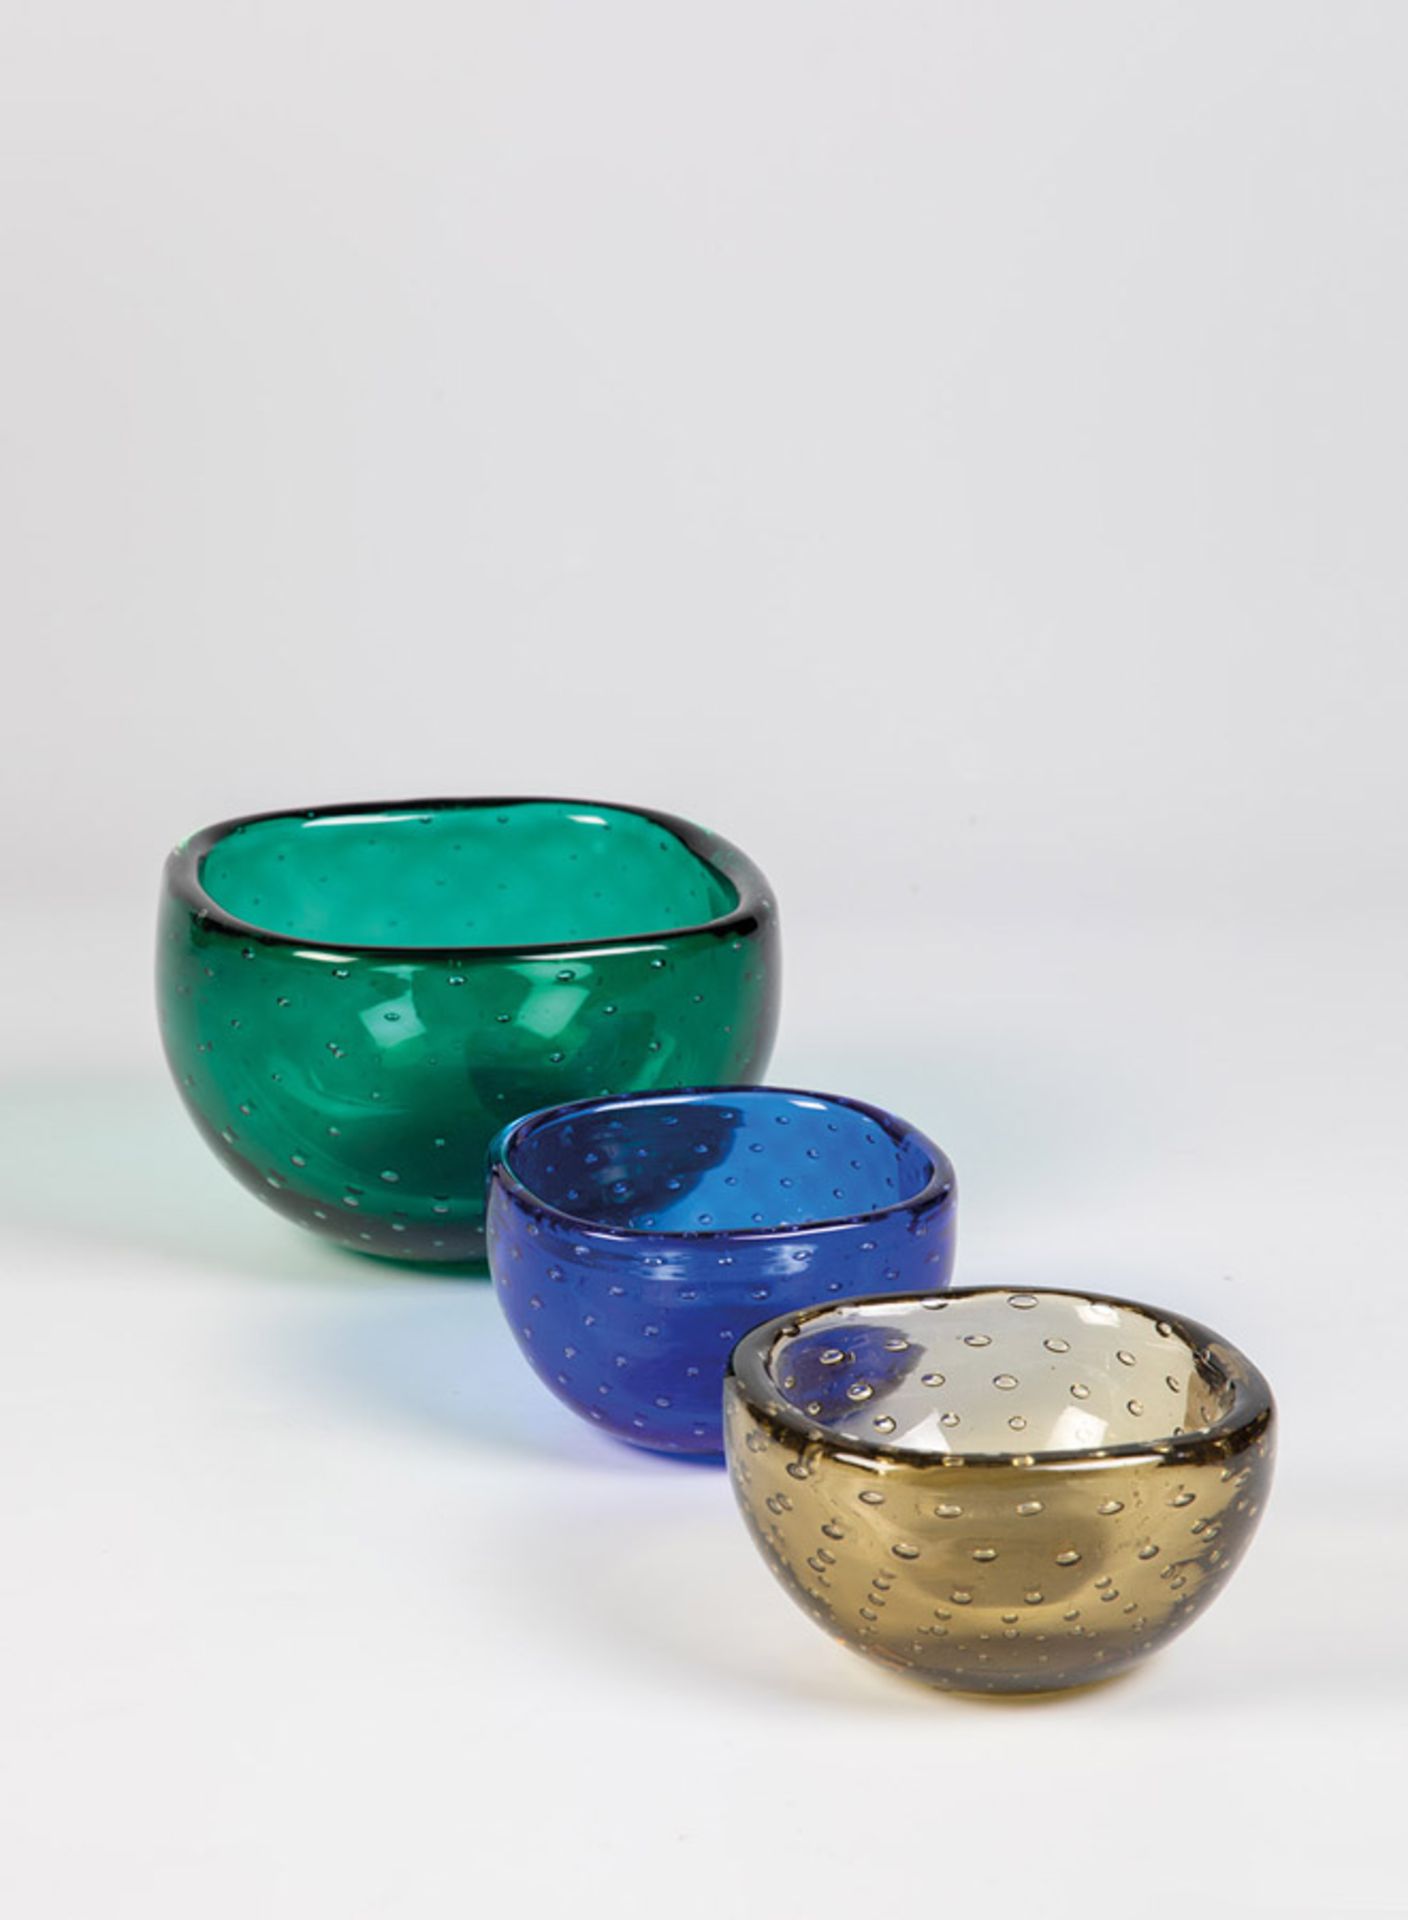 Drei Schalen "a bollicine"Venini, Murano, 50er Jahre Grünes, blaues und olivfarbenes Glas mit